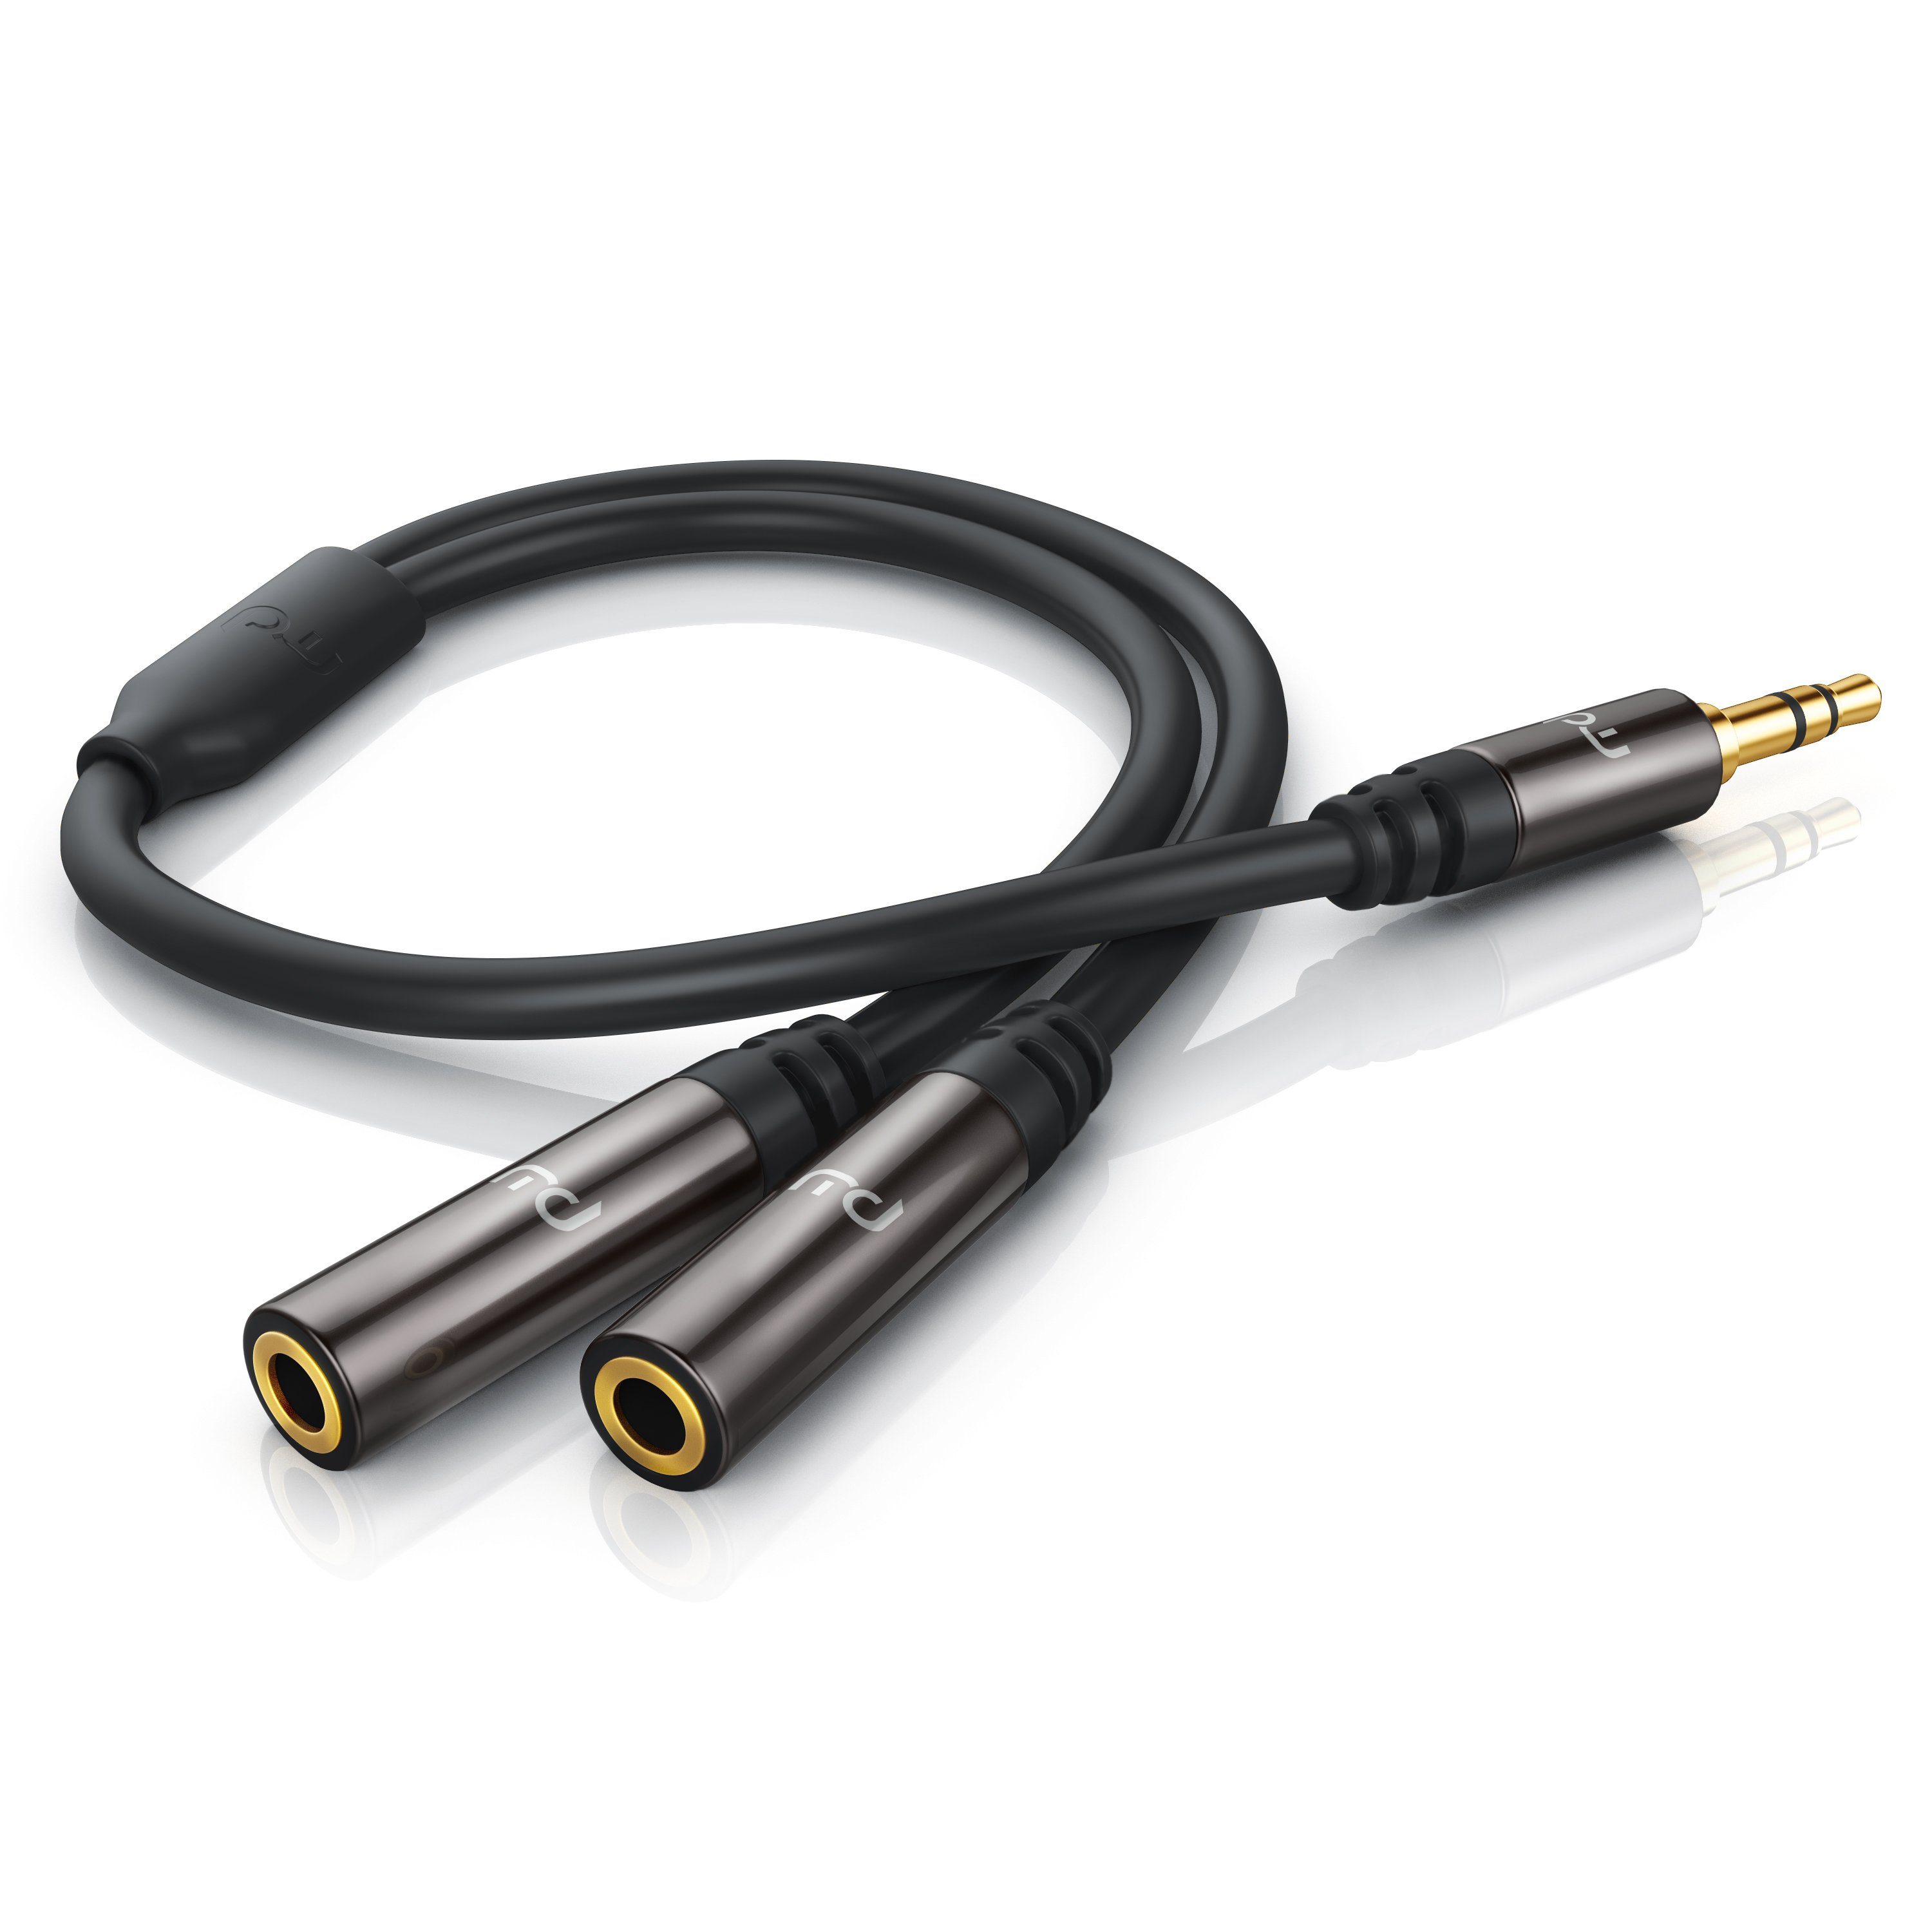 Primewire Audio-Adapter zu 2x 3,5mm Klinken Buchse 3,5mm Stecker, 15 cm,  Premium Stereo Audio 3,5mm Klinke Y-Adapter